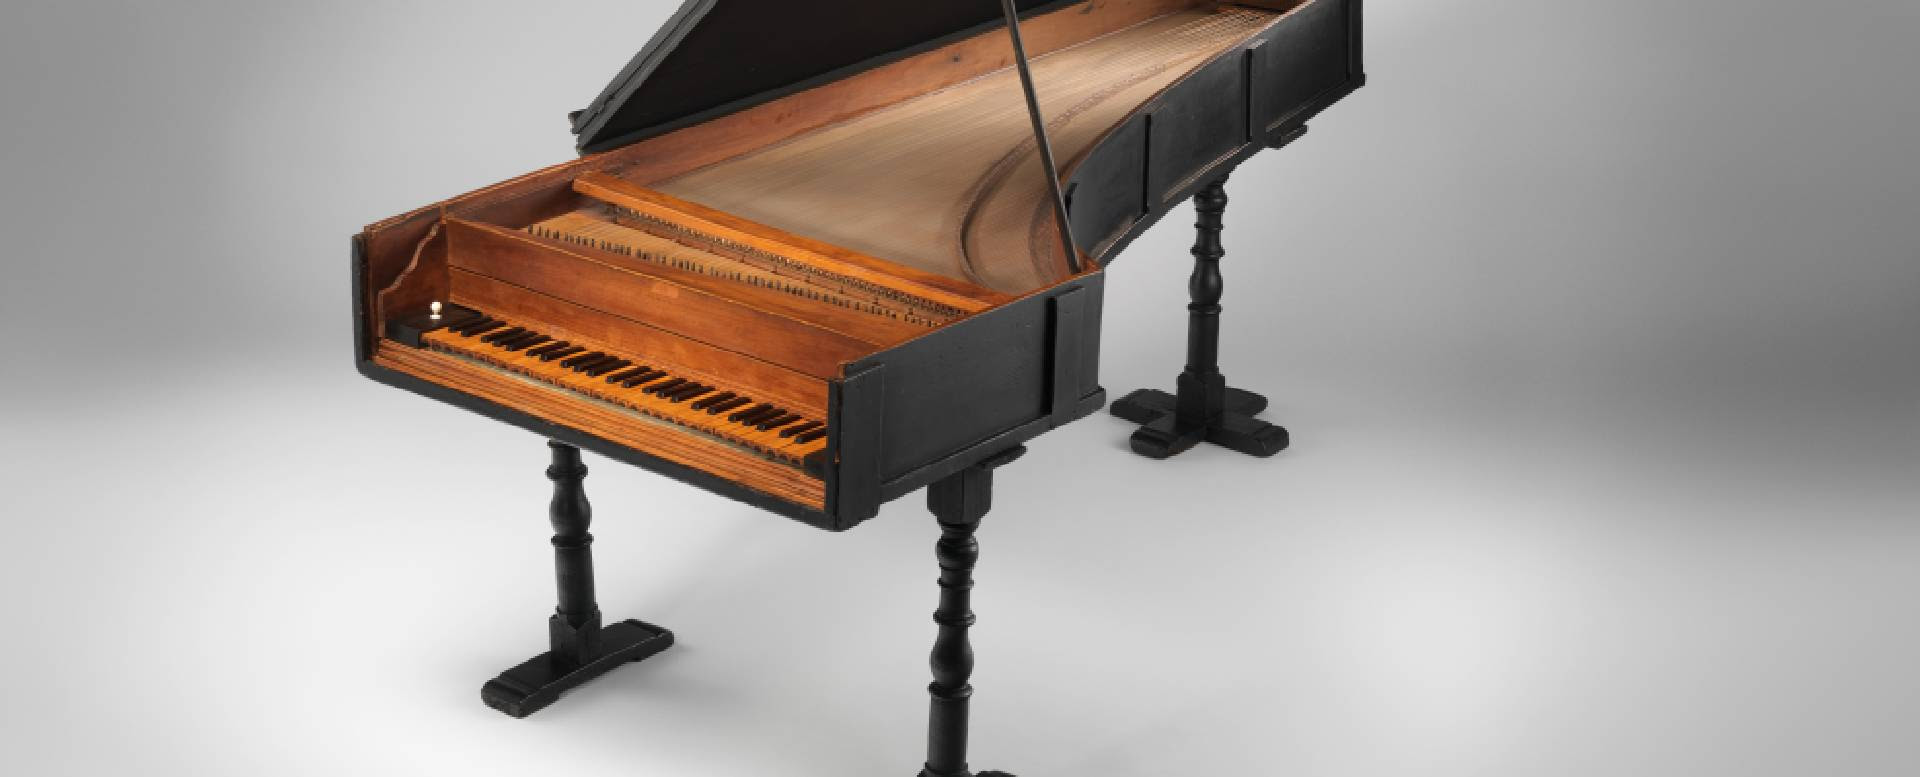 Piano de cauda, ​​o mais antigo dos três pianos existentes, de Bartolomeo Cristofori Cristofori.